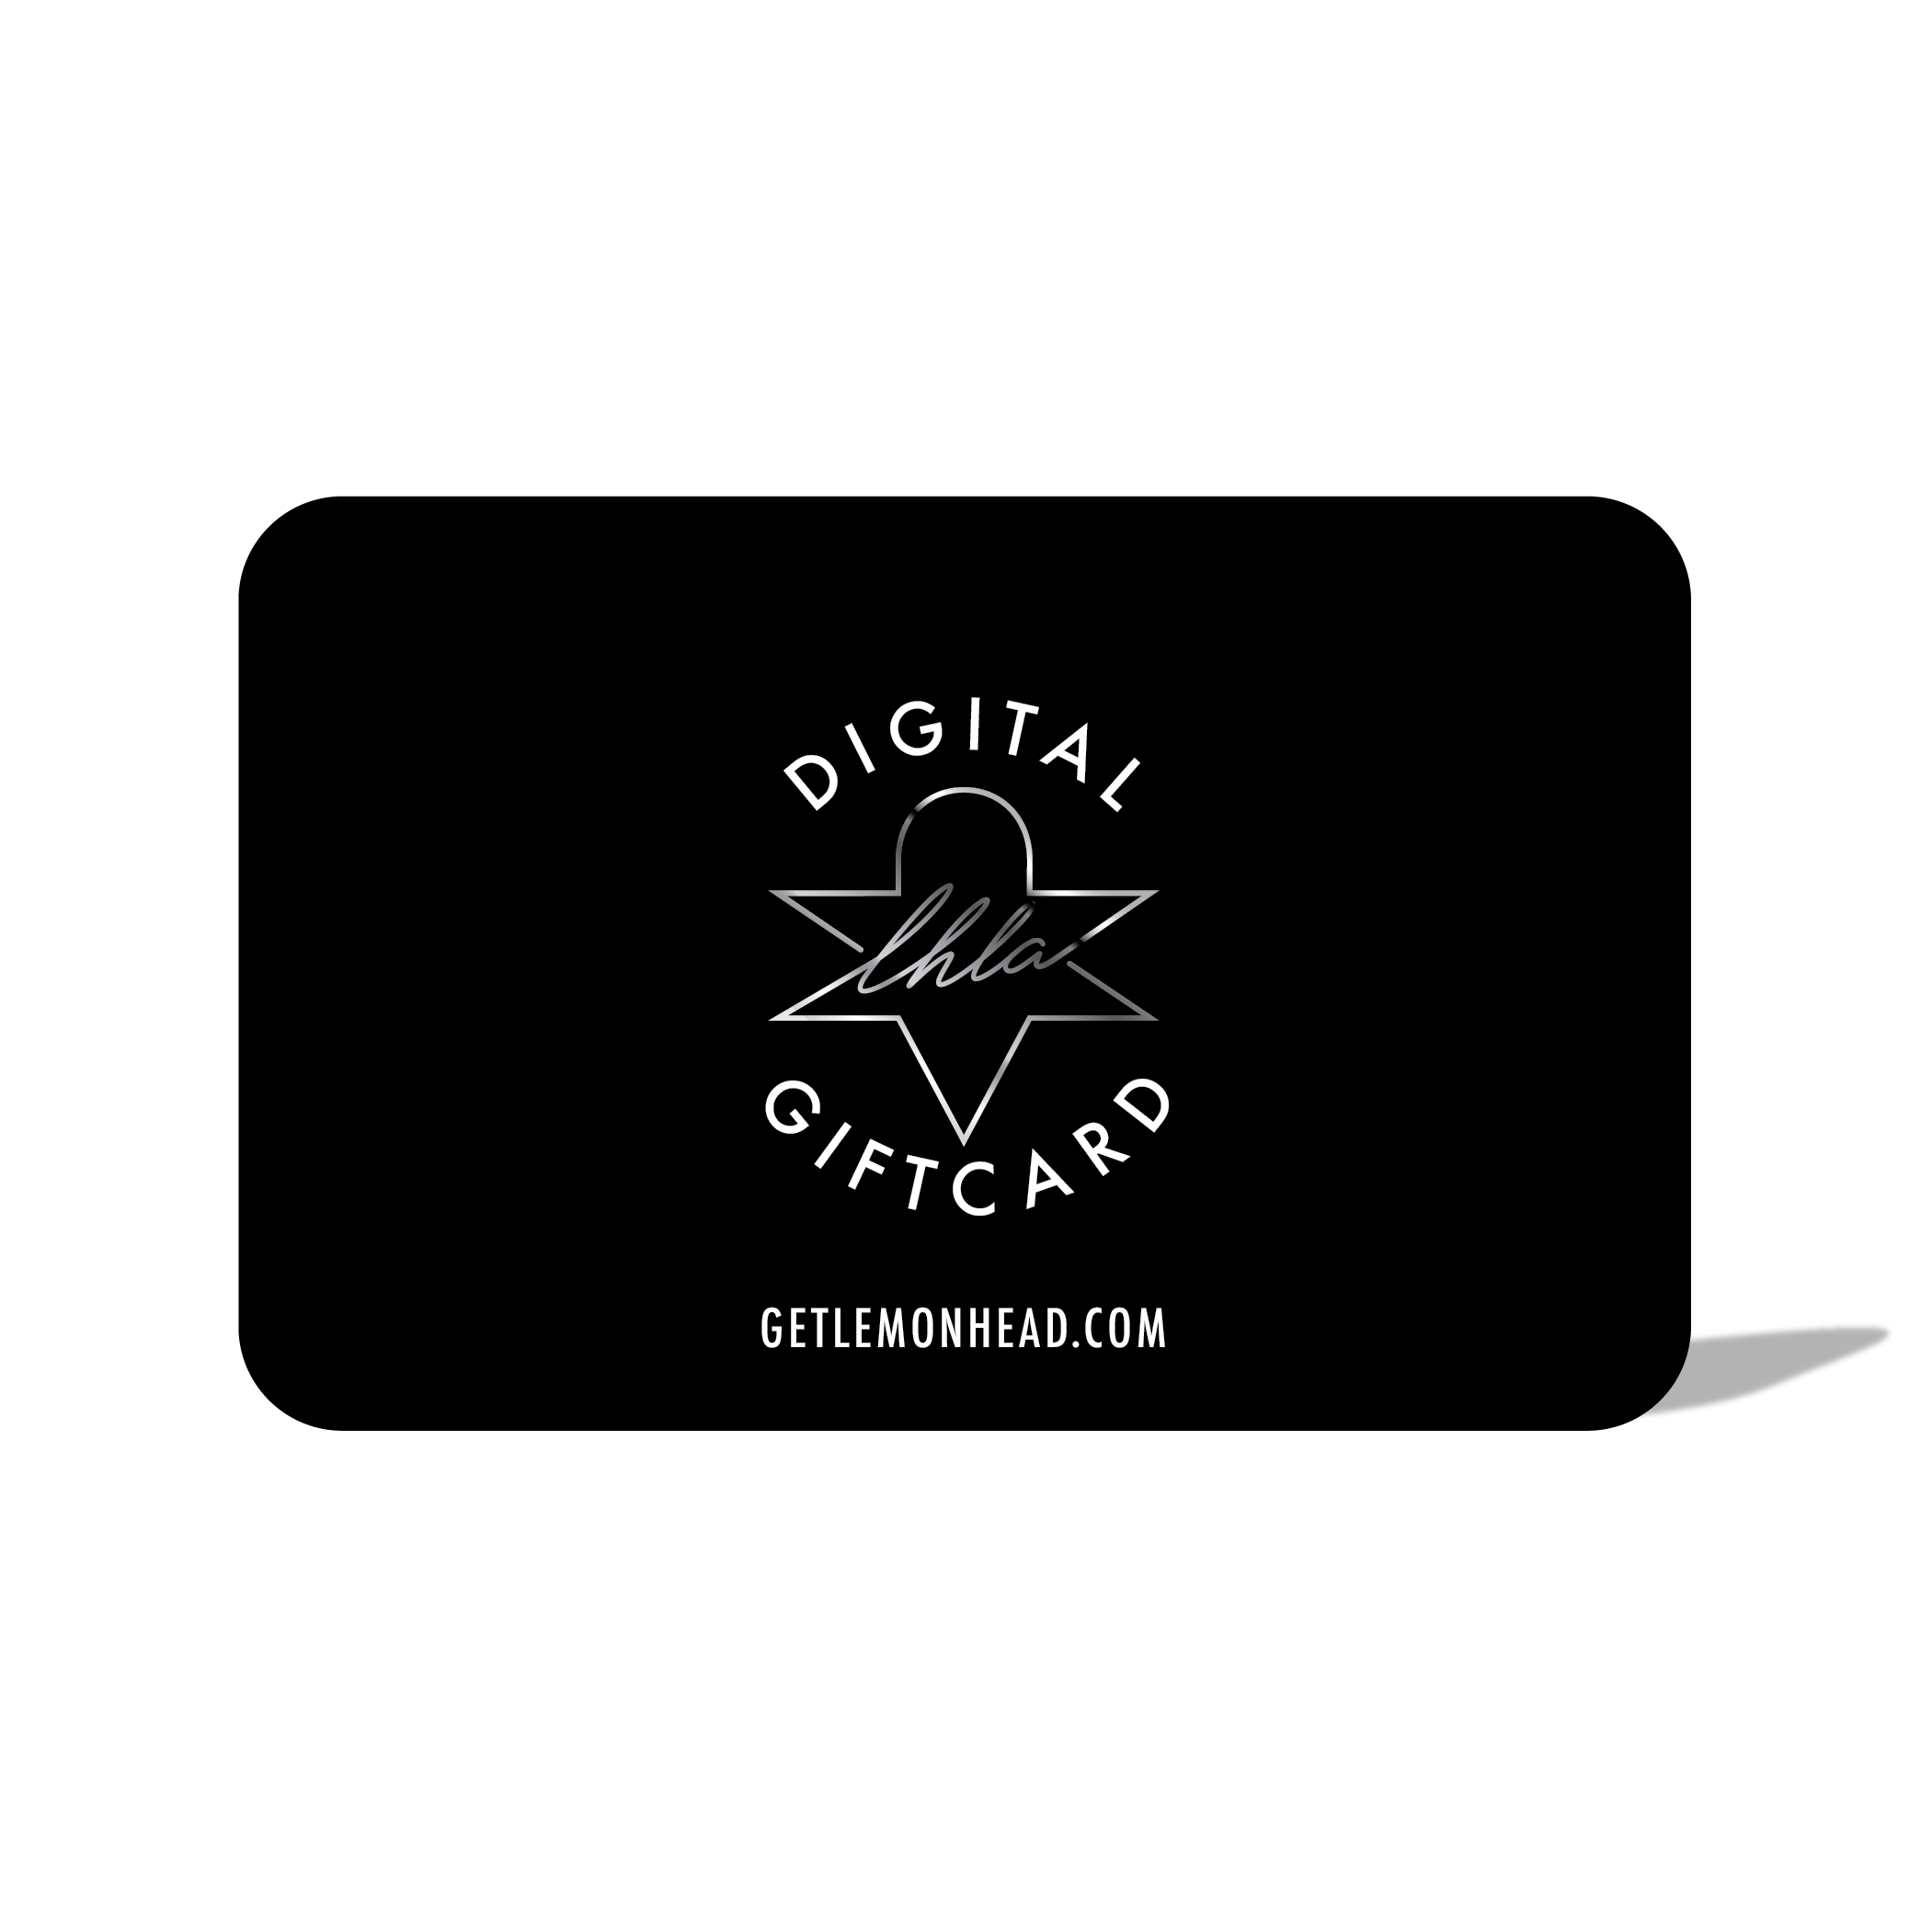 LHLA Digital Giftcard